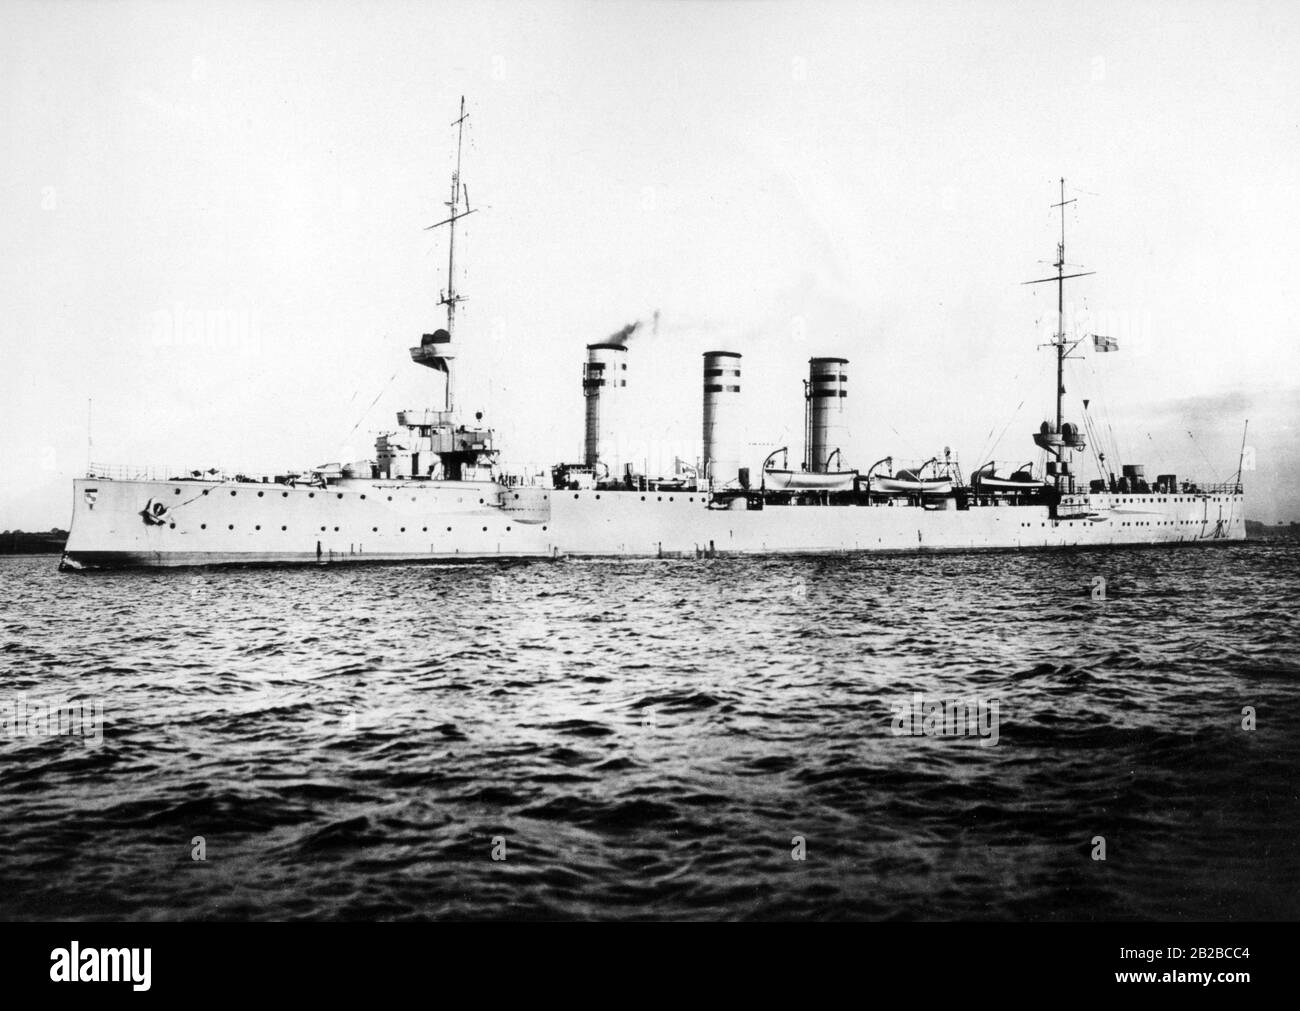 Le SMS Mainz, un croiseur léger de la Marine impériale, qui a été utilisé pendant la première Guerre mondiale. Il a été coulé par les navires de guerre britanniques en août 1914 dans la première bataille navale près d'Helgoland. Banque D'Images